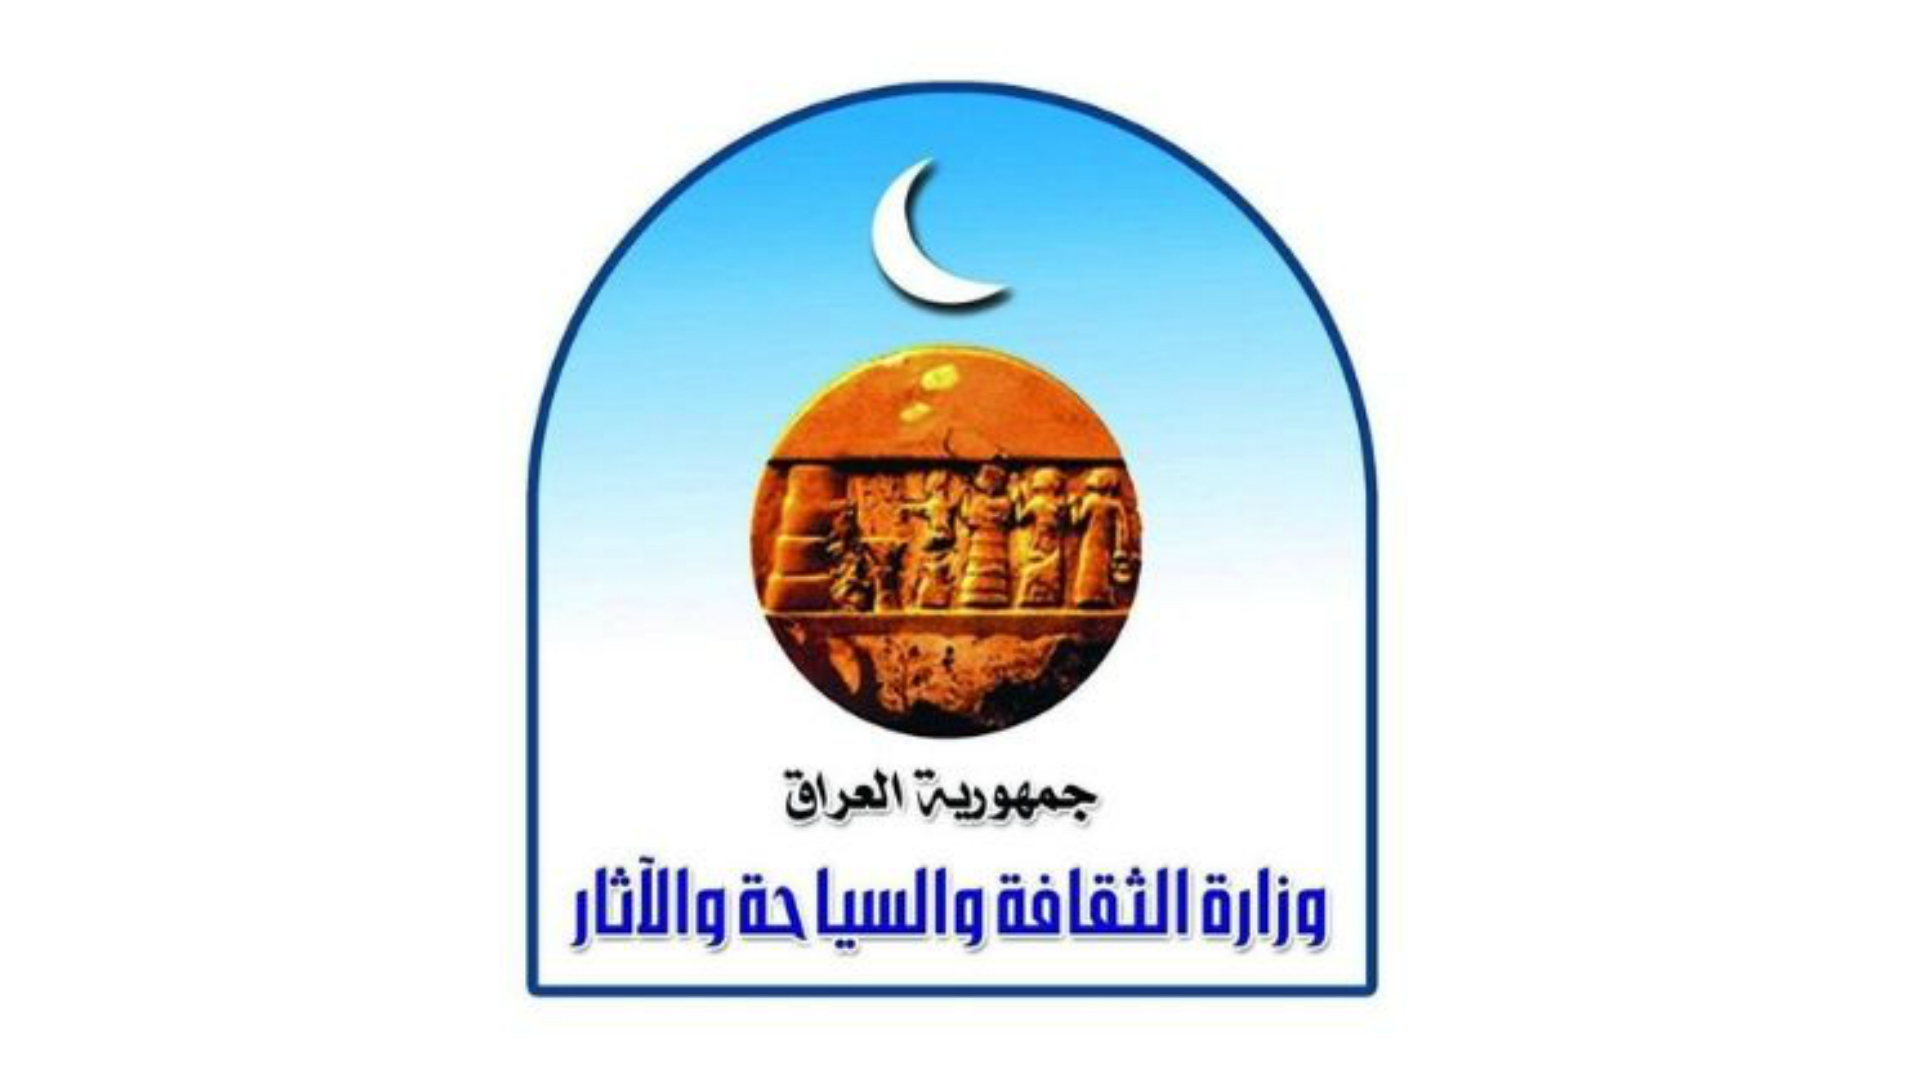 أعلنت وزارة الثقافة والسياحة والآثار عن حصيلة القطع الأثرية التي استطاعت استرجاعها منذ العام 2003